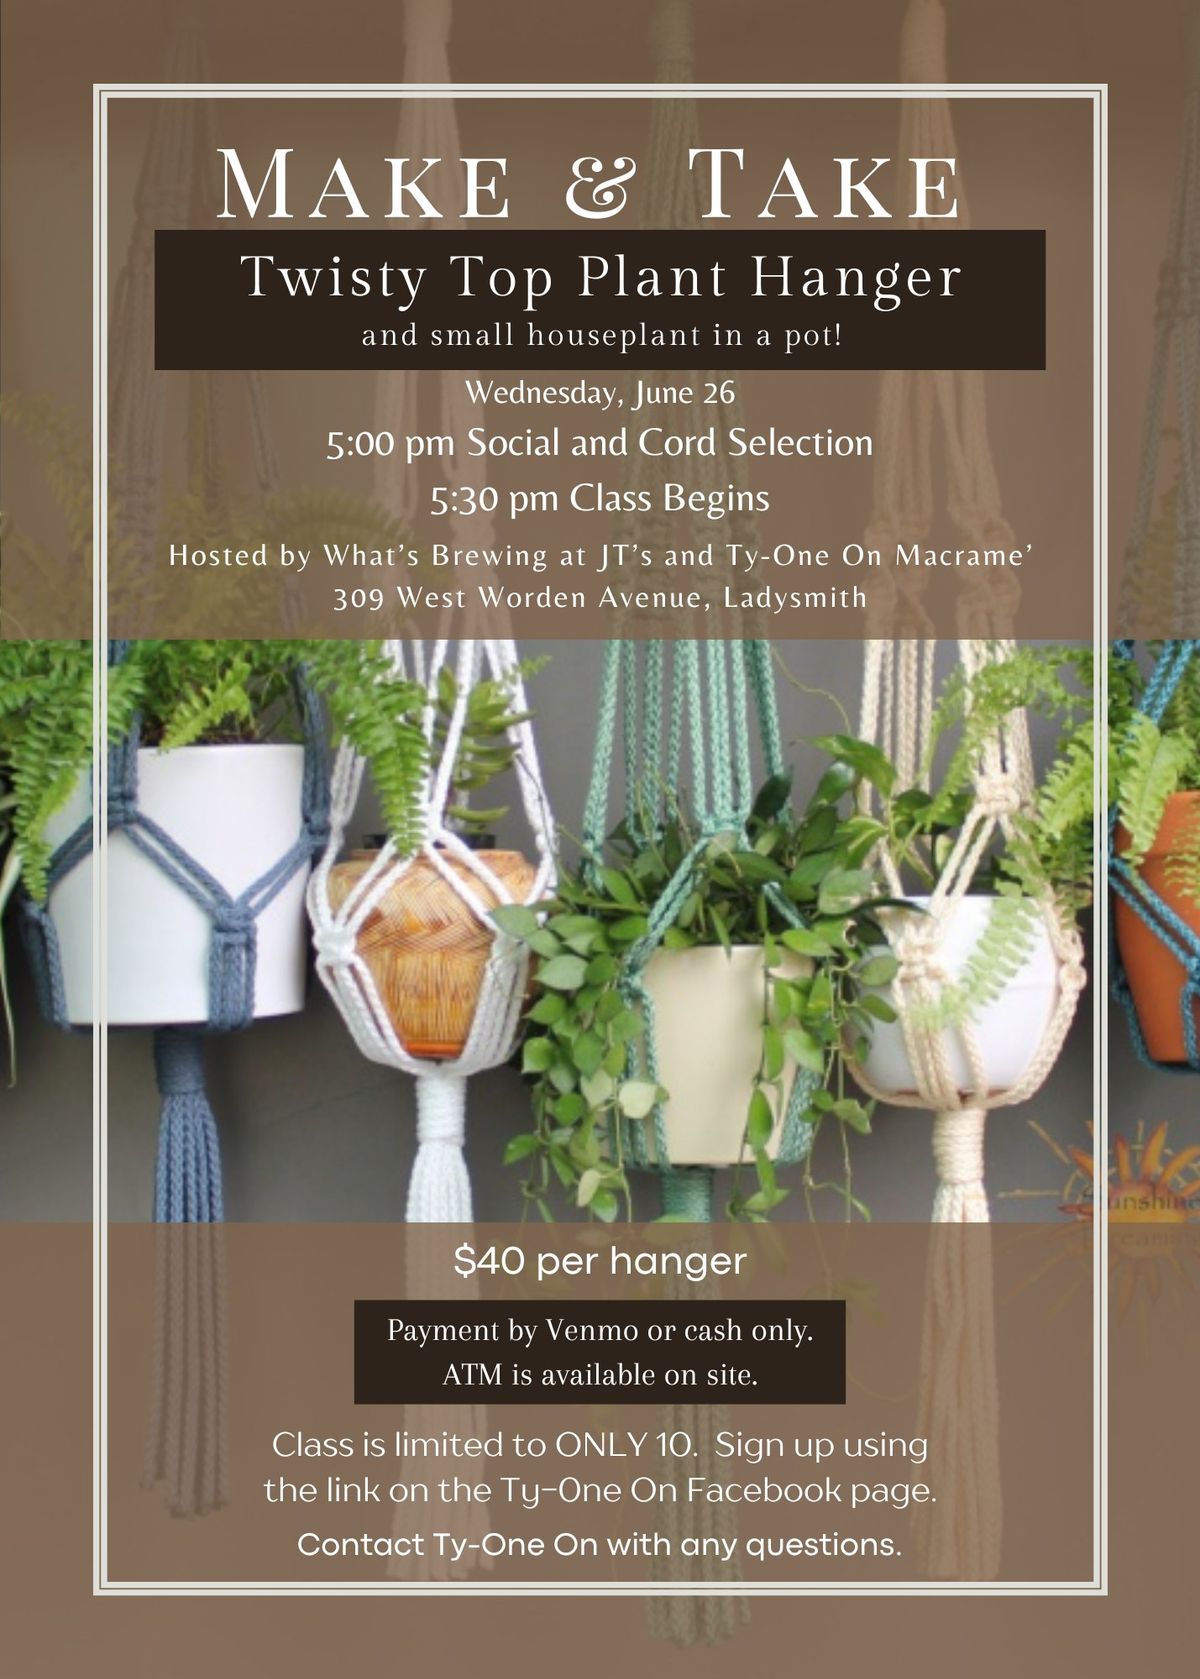 Make & Take Twisty Top Plant Hanger